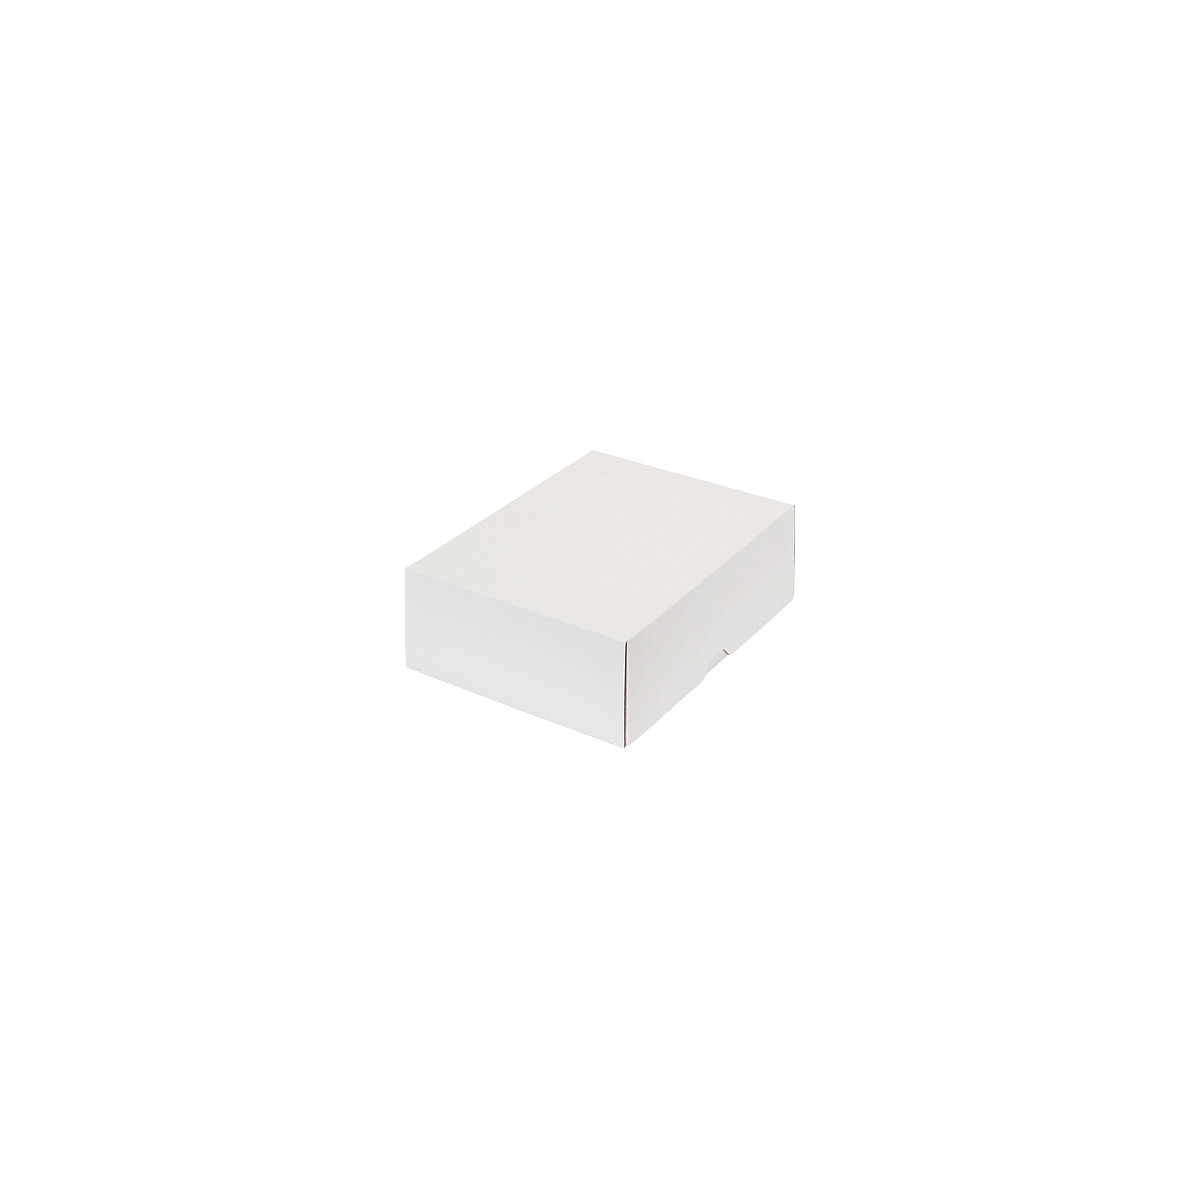 Stülpdeckelkarton, zweiteilig, Innenmaße 252 x 180 x 79 mm, B5, weiß, ab 30 Stk-13